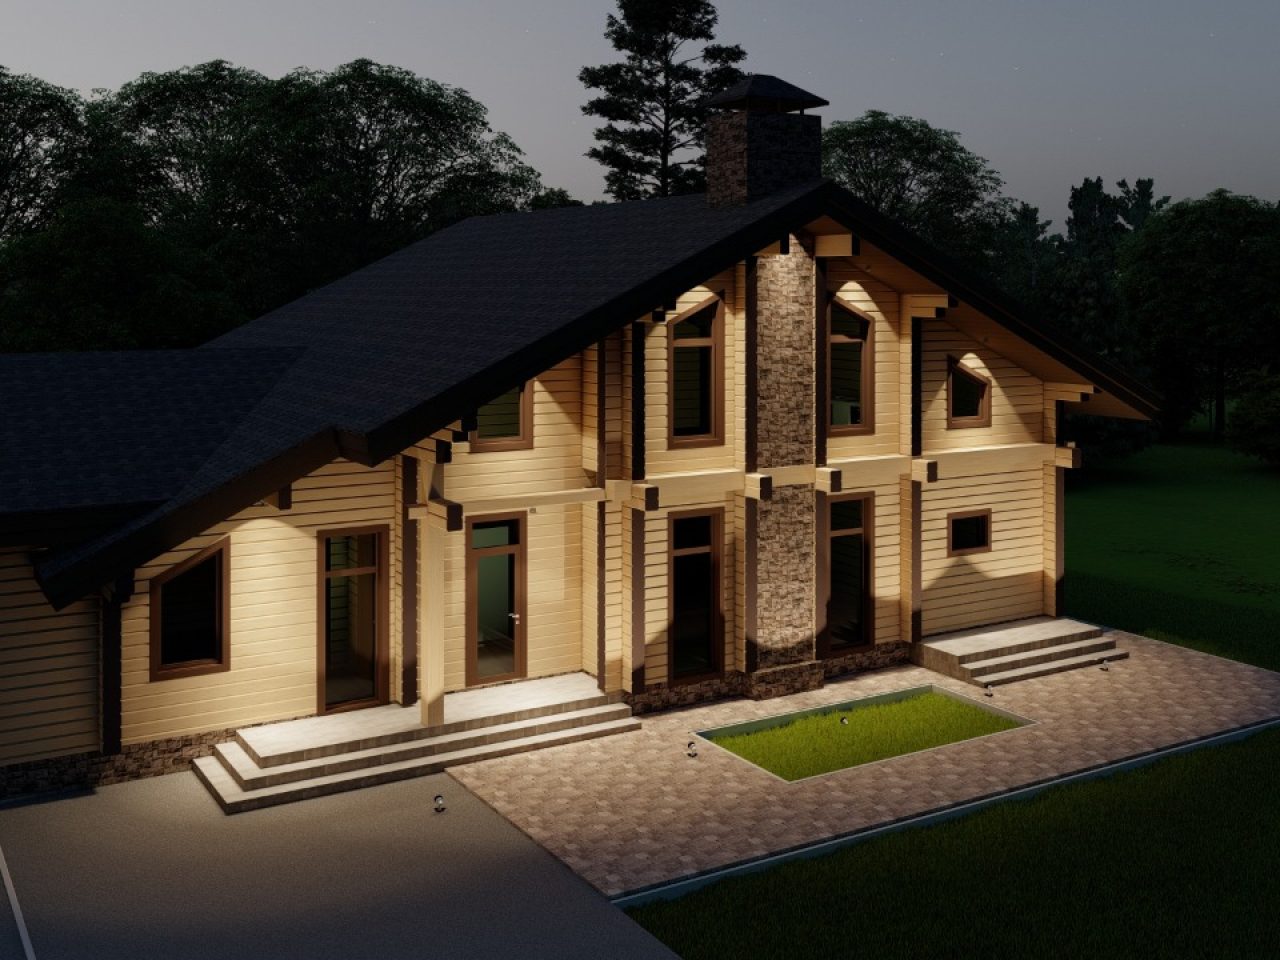 визуализация 3D дома из клееного бусаWhatsApp Image 2020-06-23 at 12.00.38